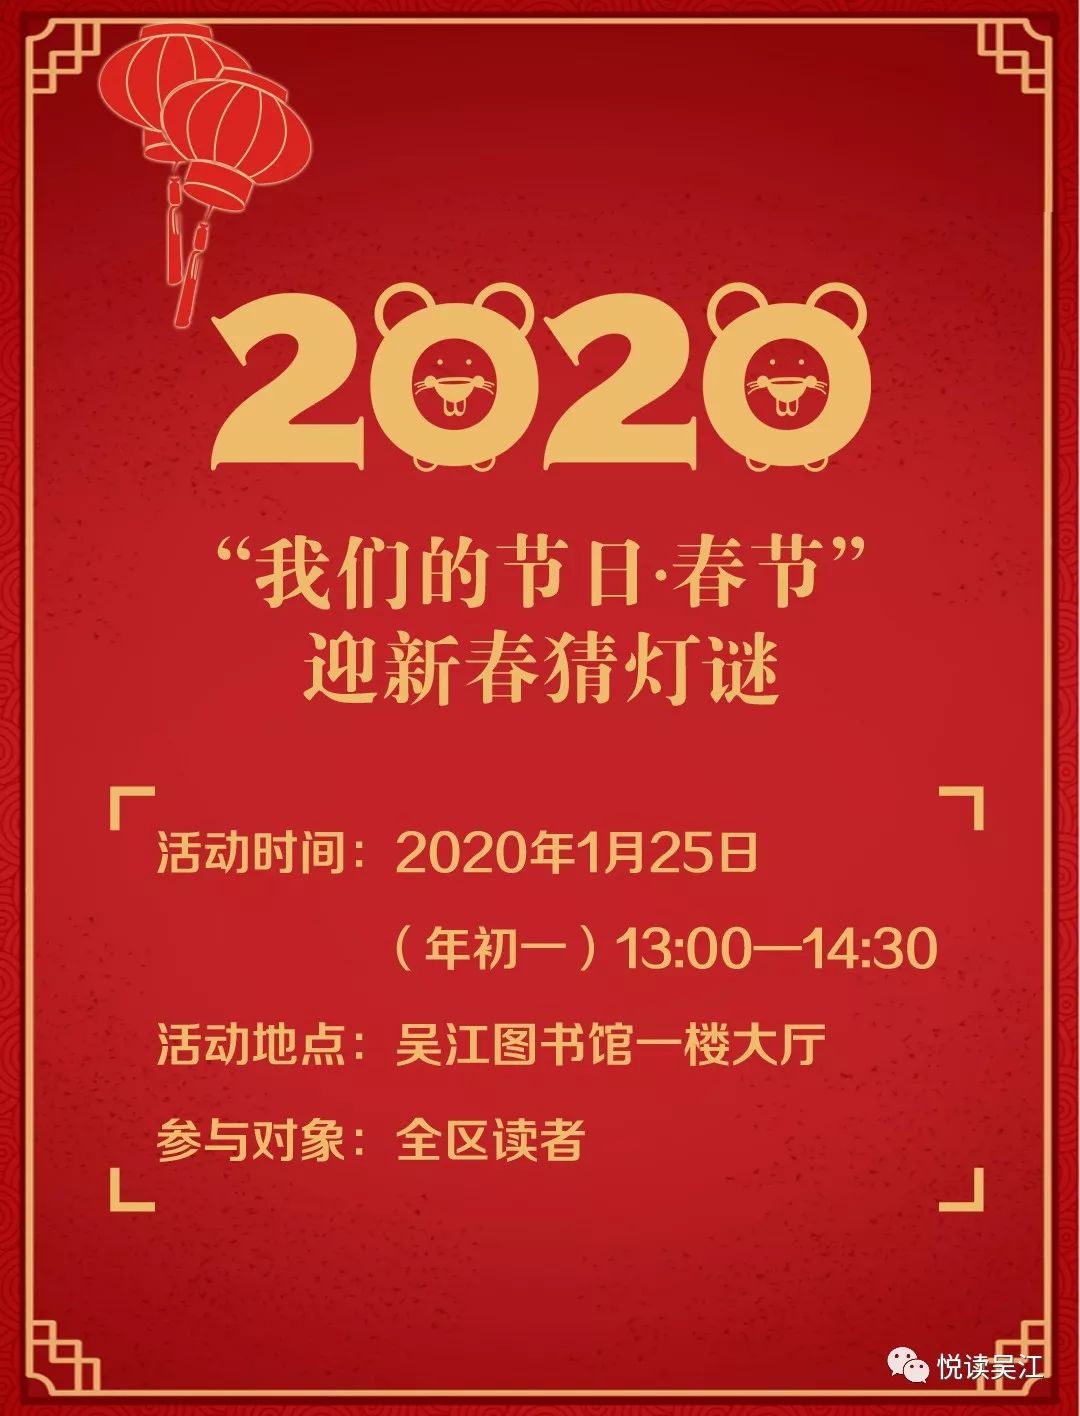 2020年春节期间吴江图书馆及各乡镇分馆开放时间通知新春活动预告